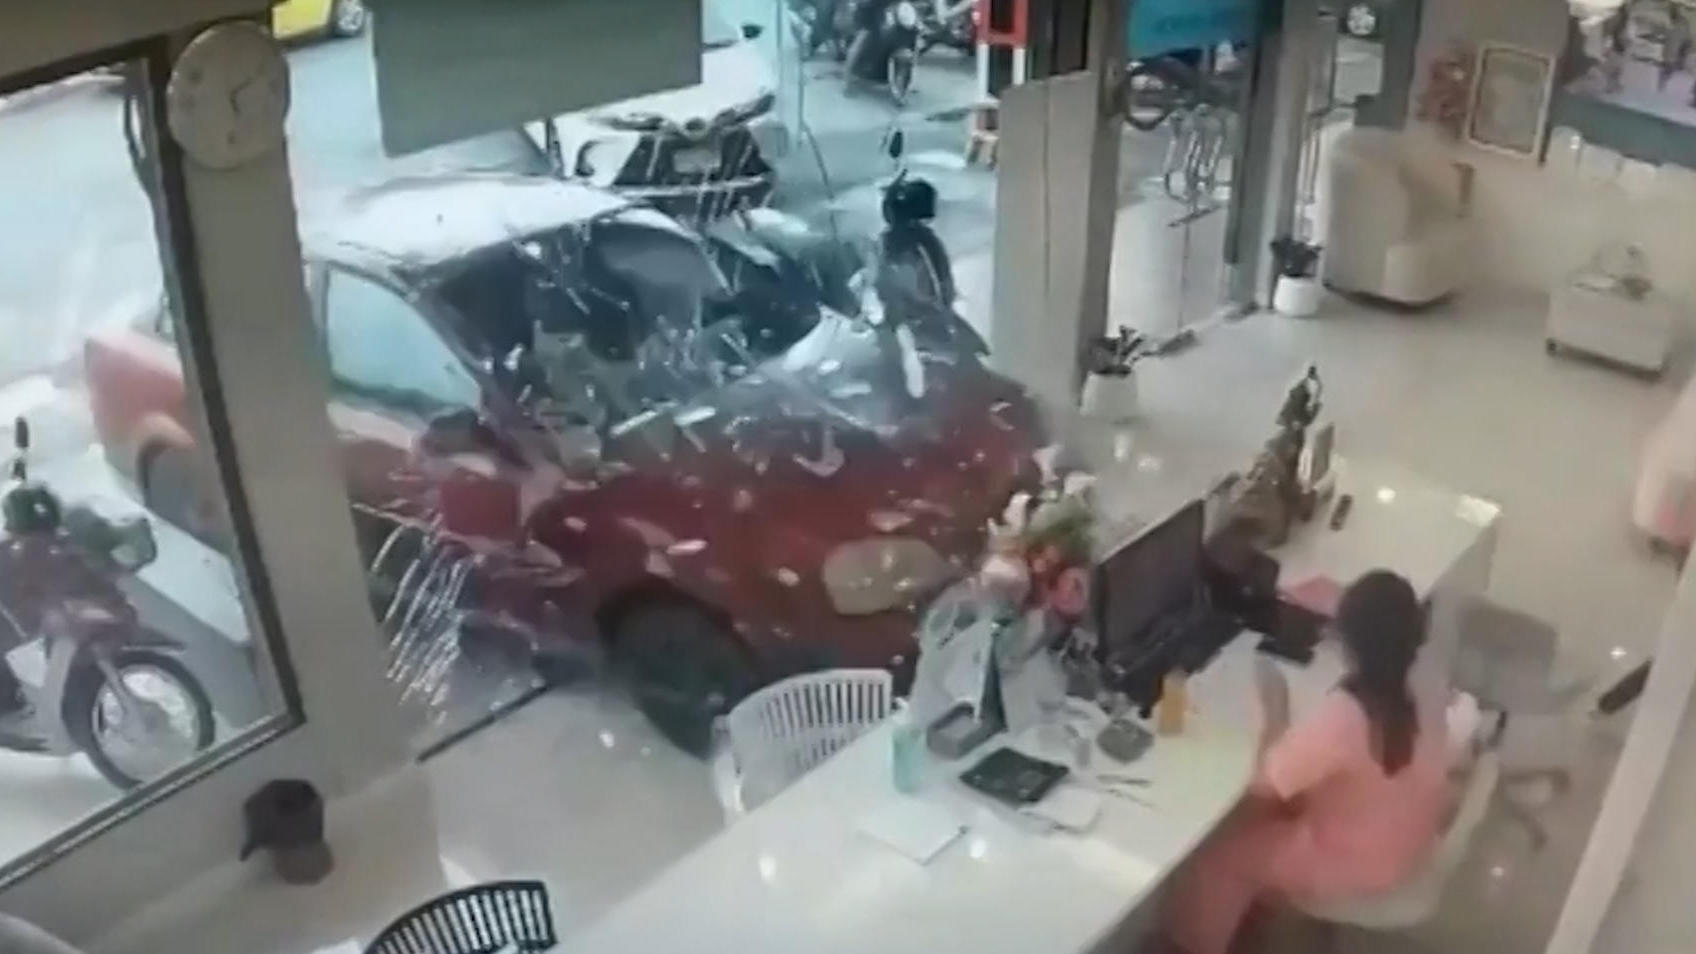 El conductor pierde el control y choca contra el vidrio a gran velocidad en una clínica de belleza